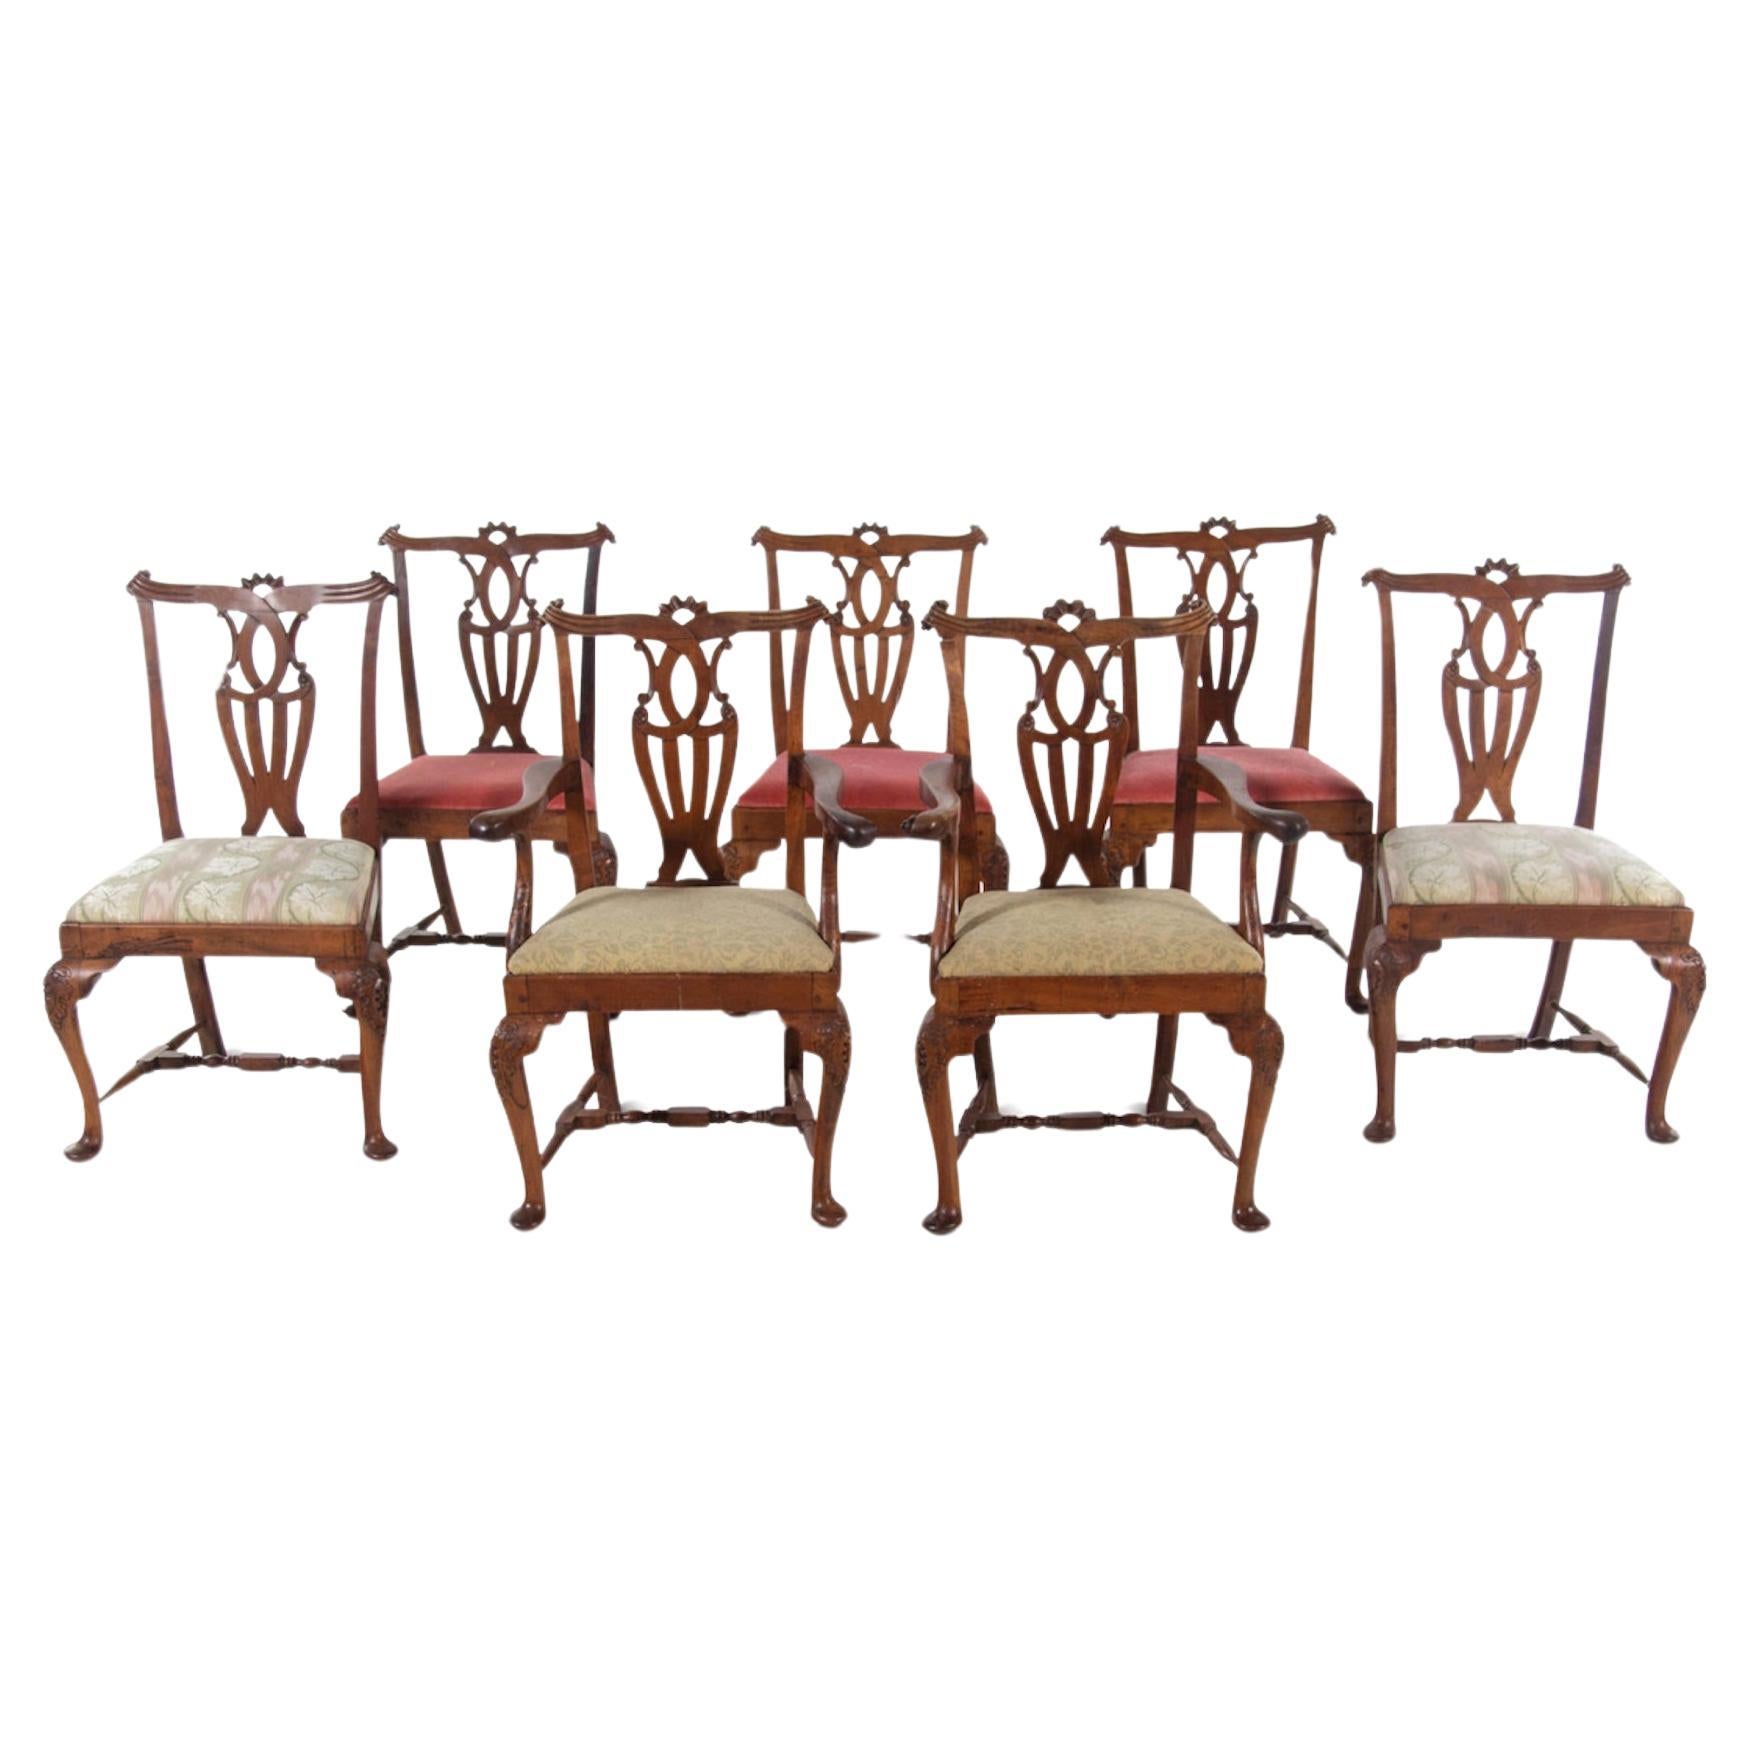 Satz von sieben Esszimmerstühlen aus irischem Nussbaumholz im George-III-Stil aus dem 18. Jahrhundert, großformatig.